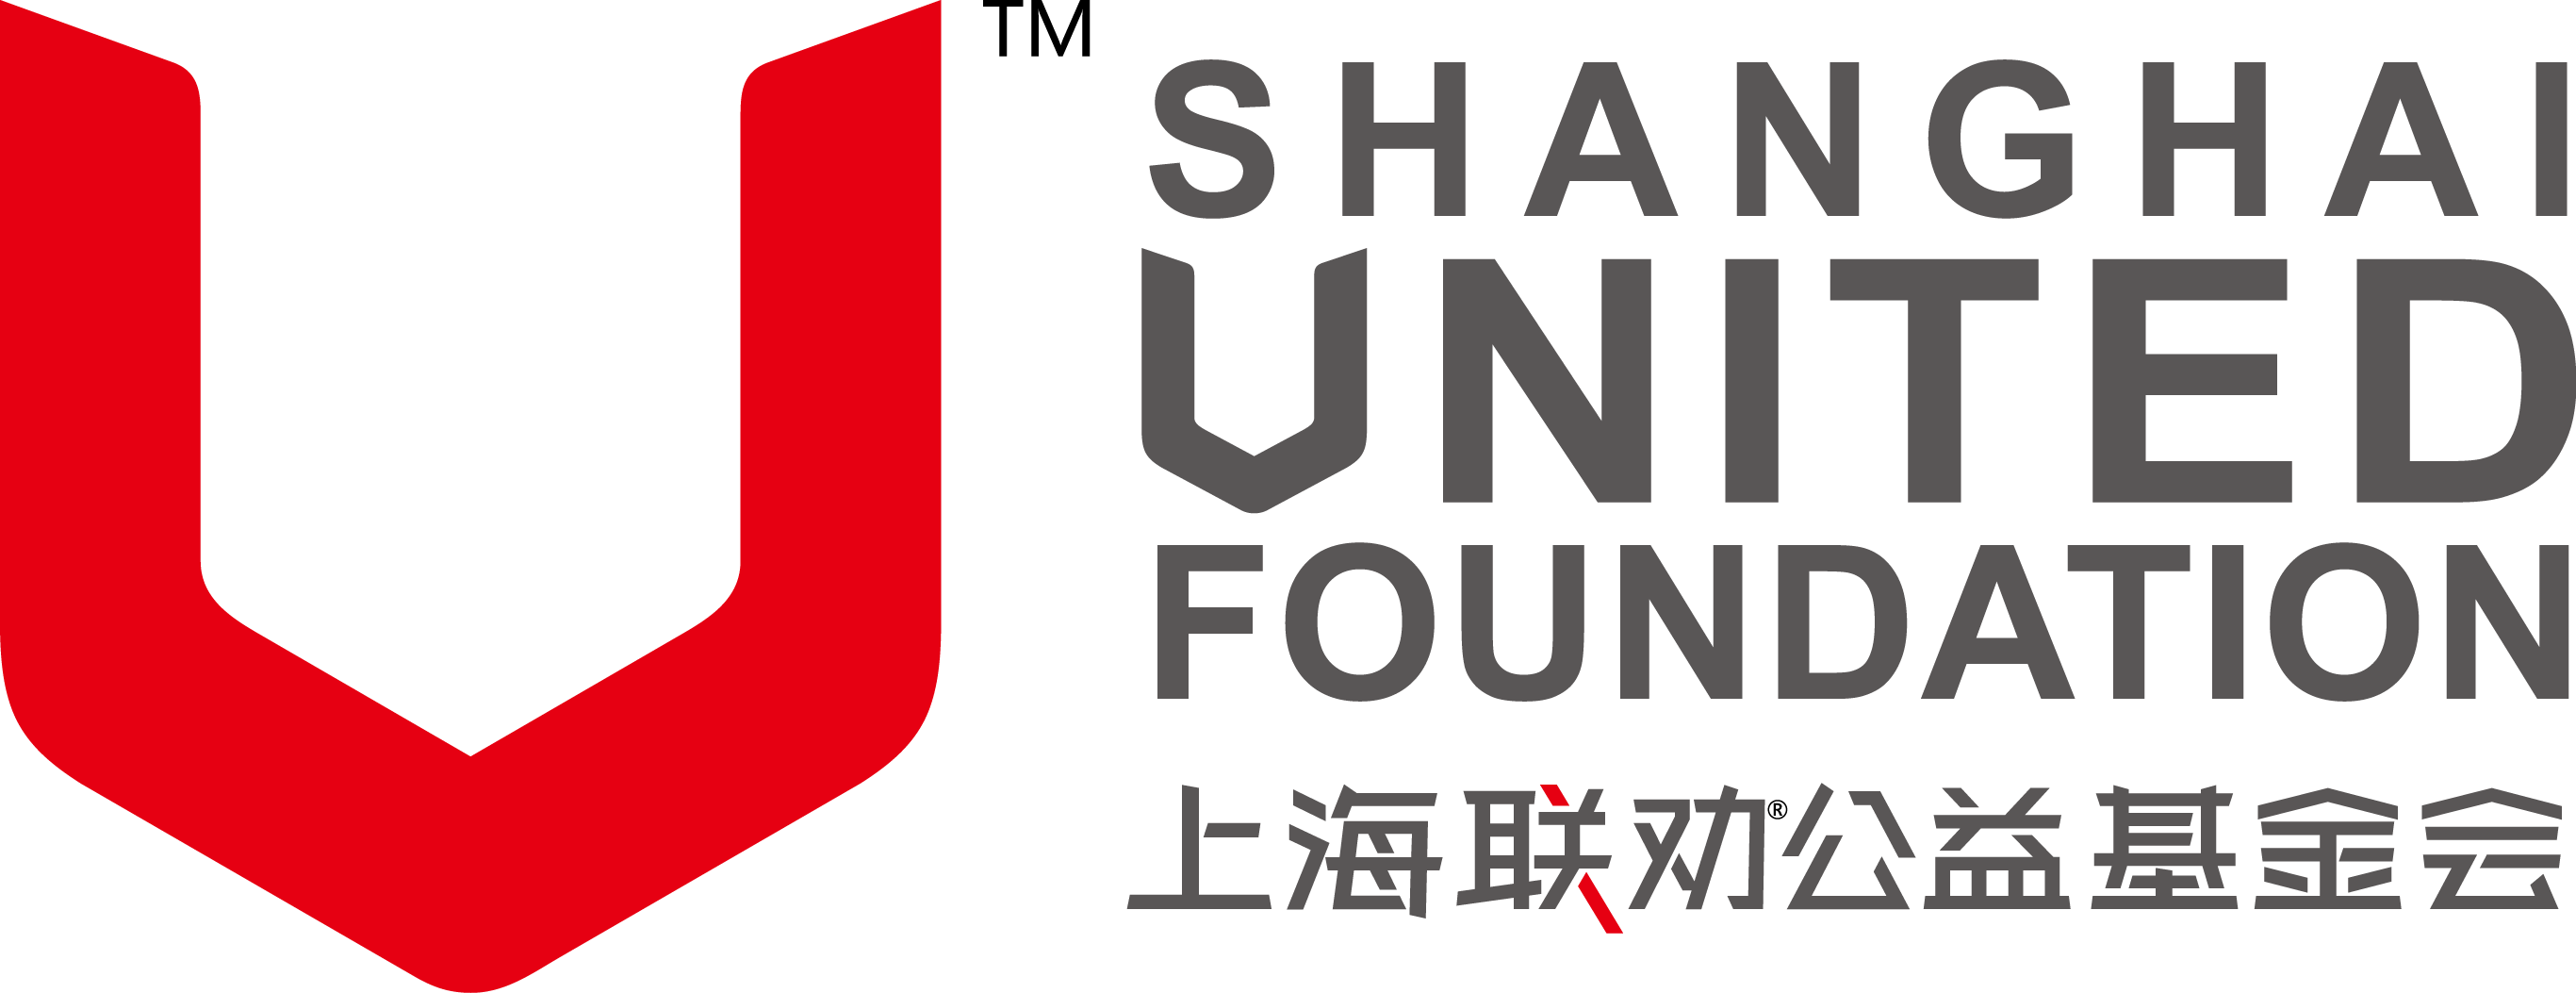 上海联劝公益基金会